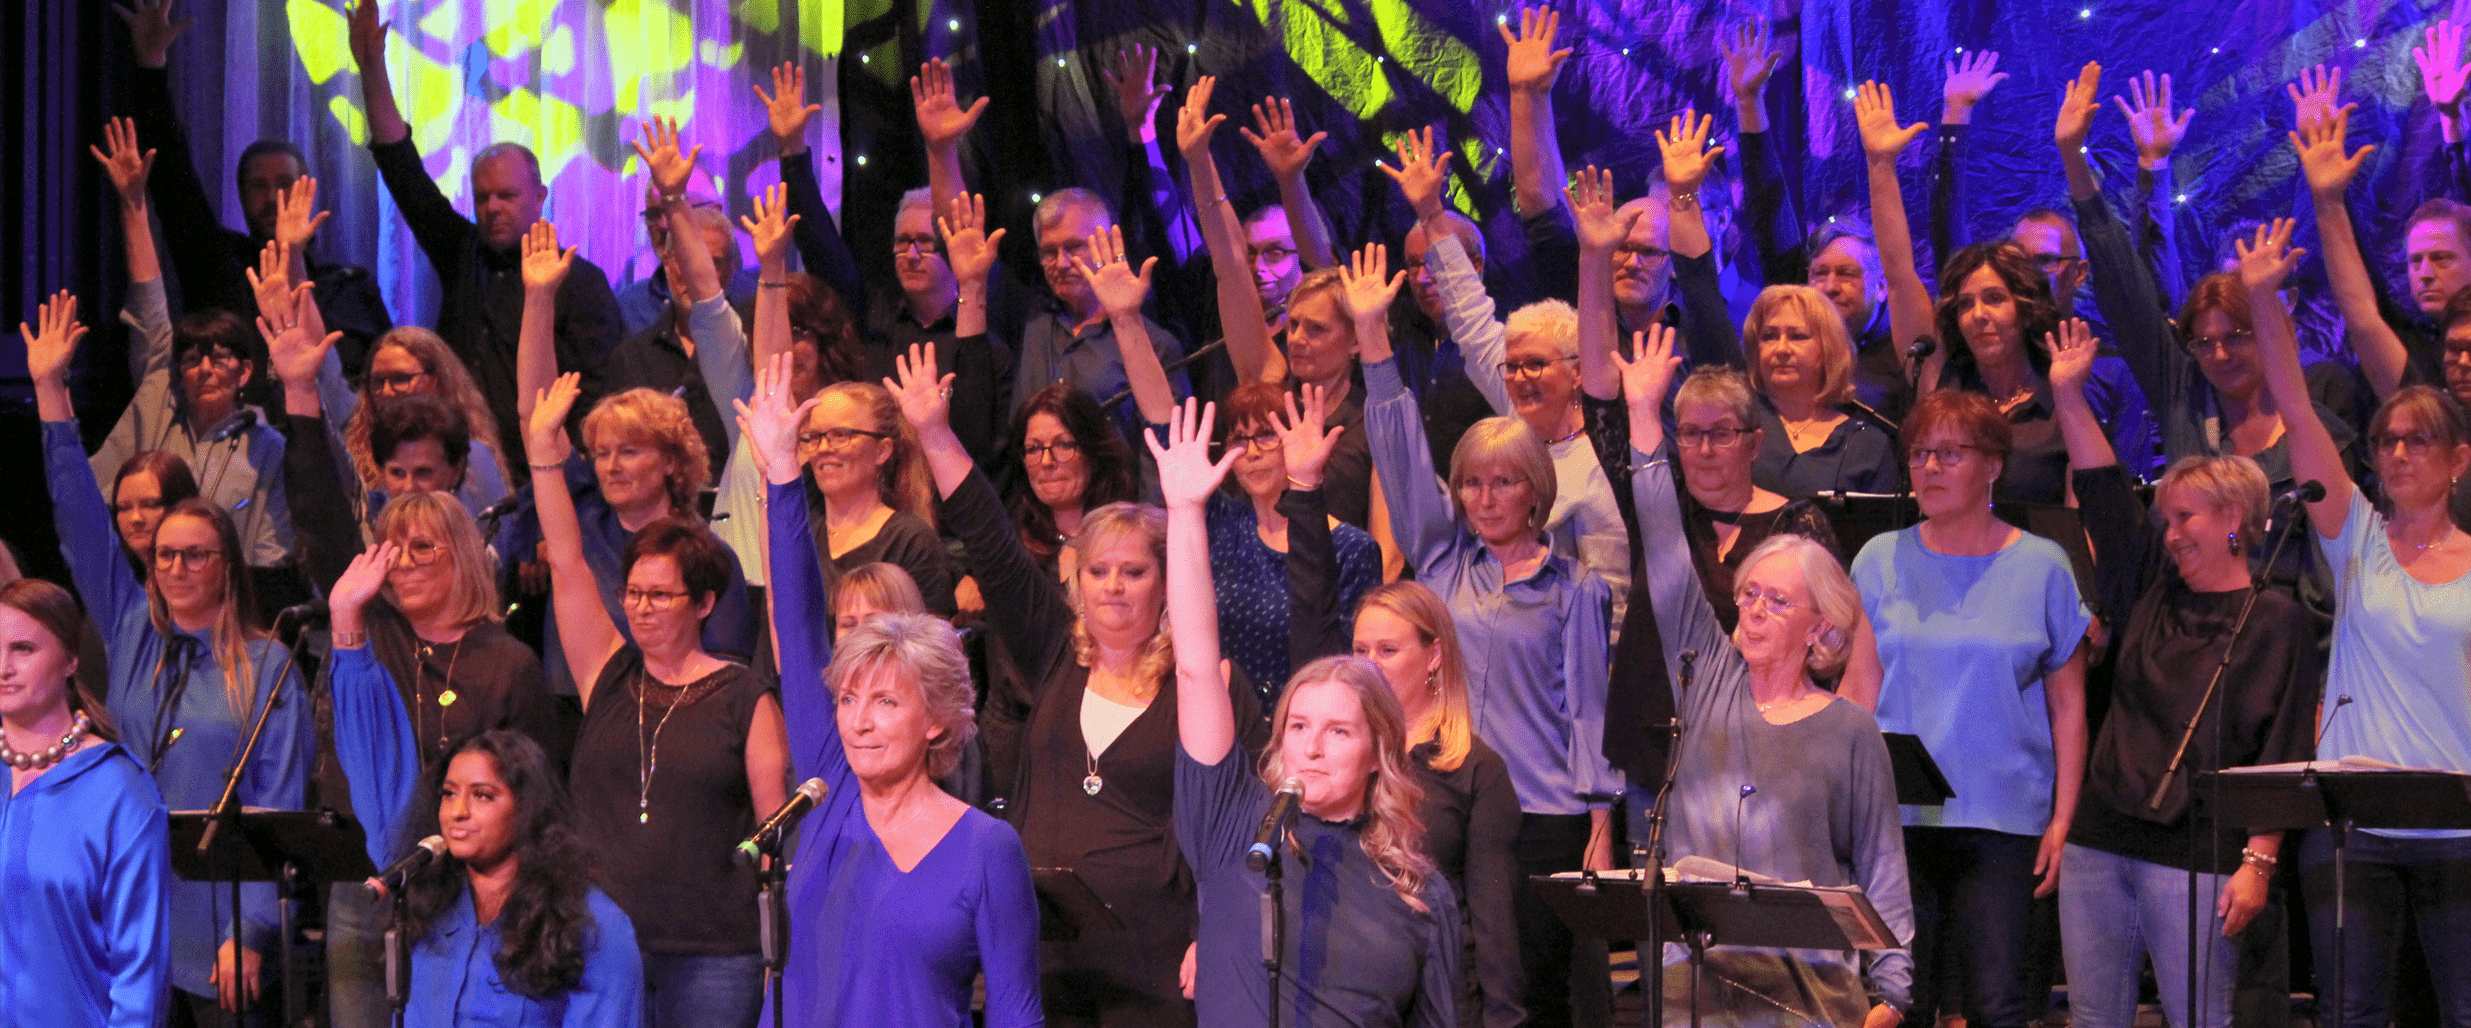 Kören Song of Joy sjunger på en blå-lila upplyst scen.